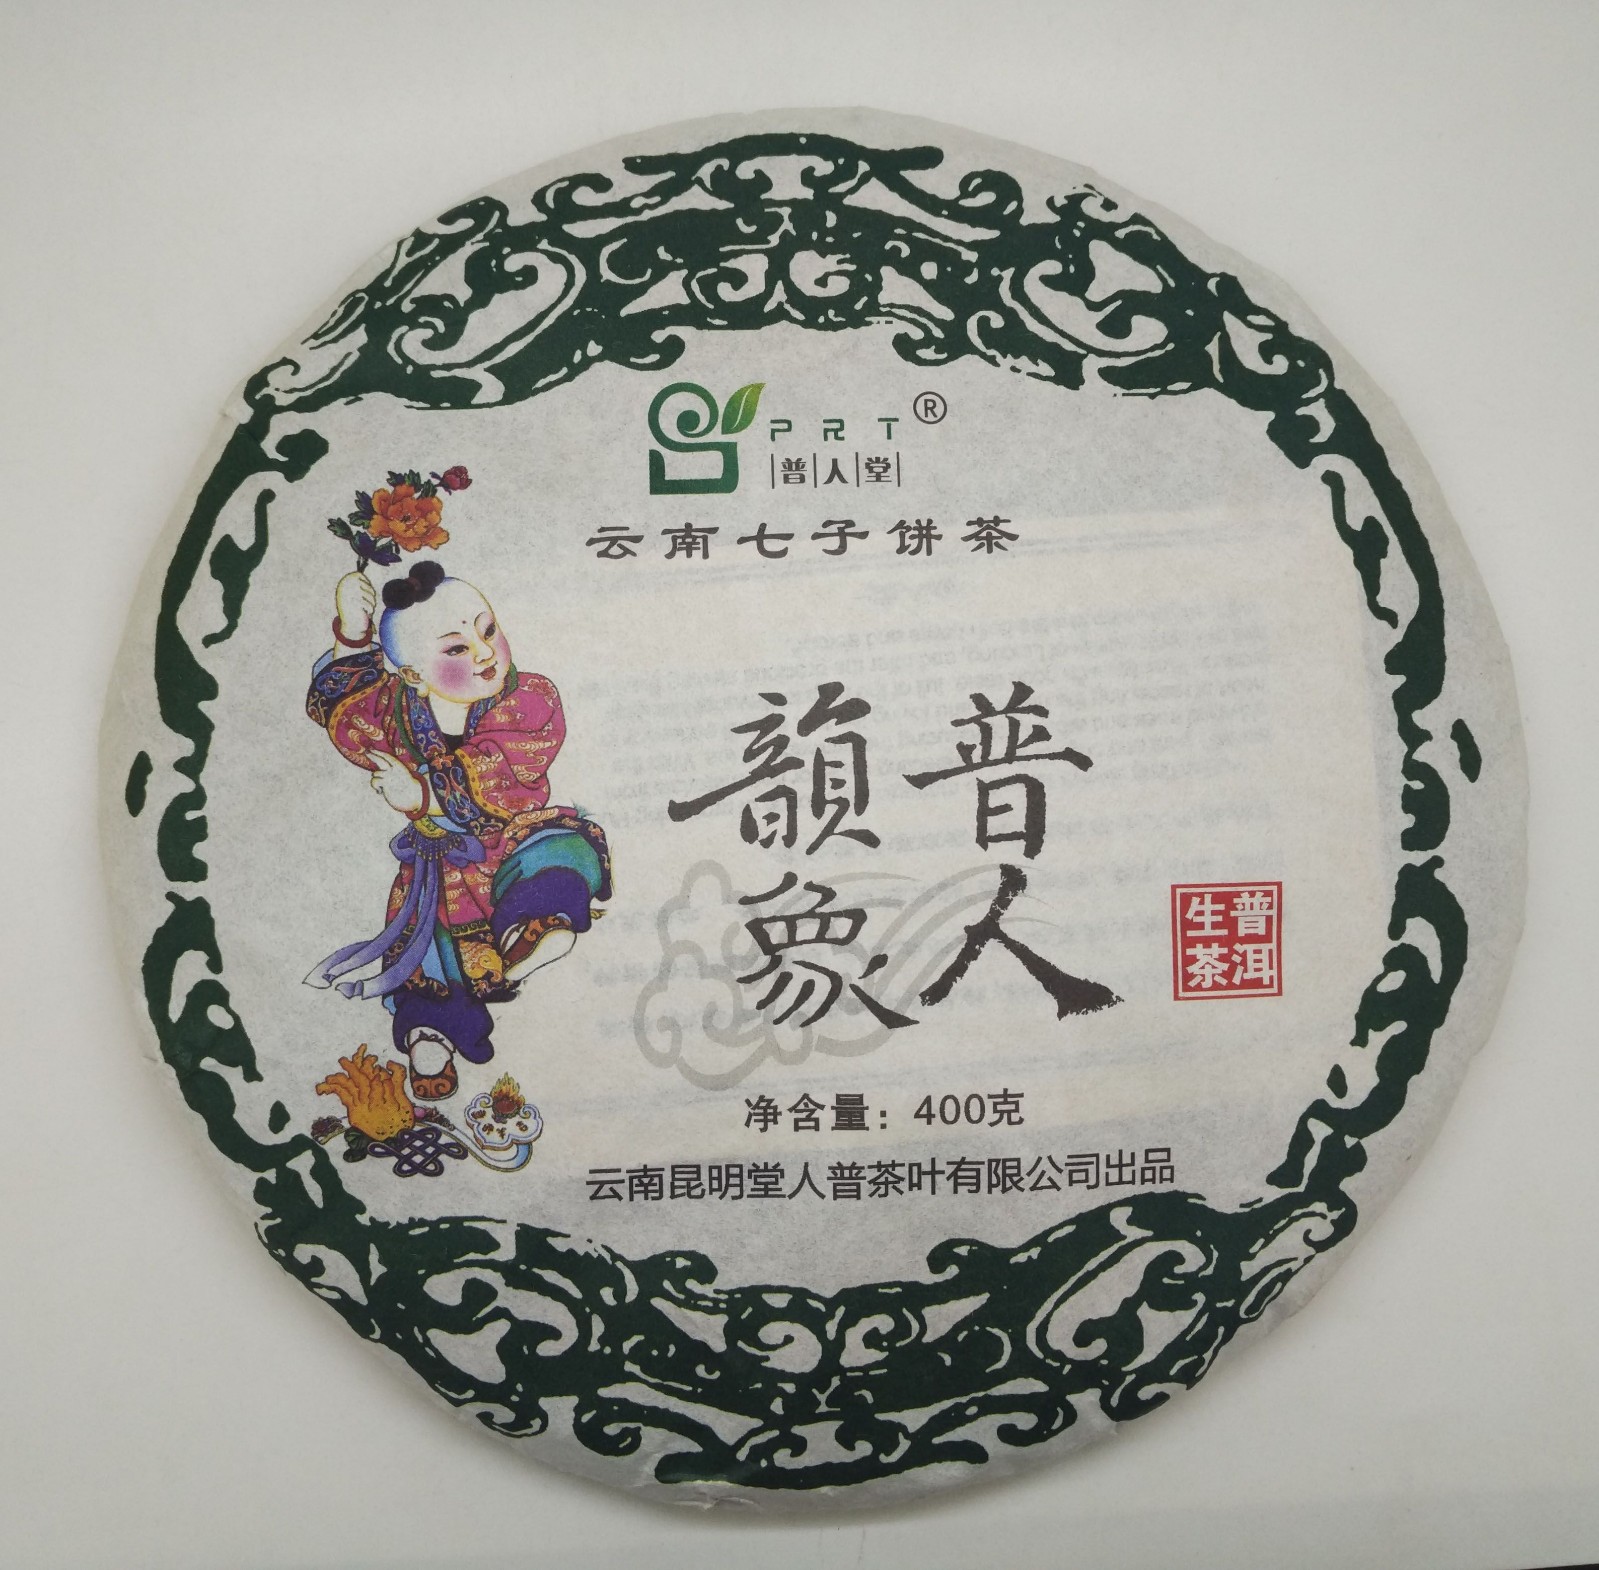 三明市姚先生订购的普人堂茶品已发出